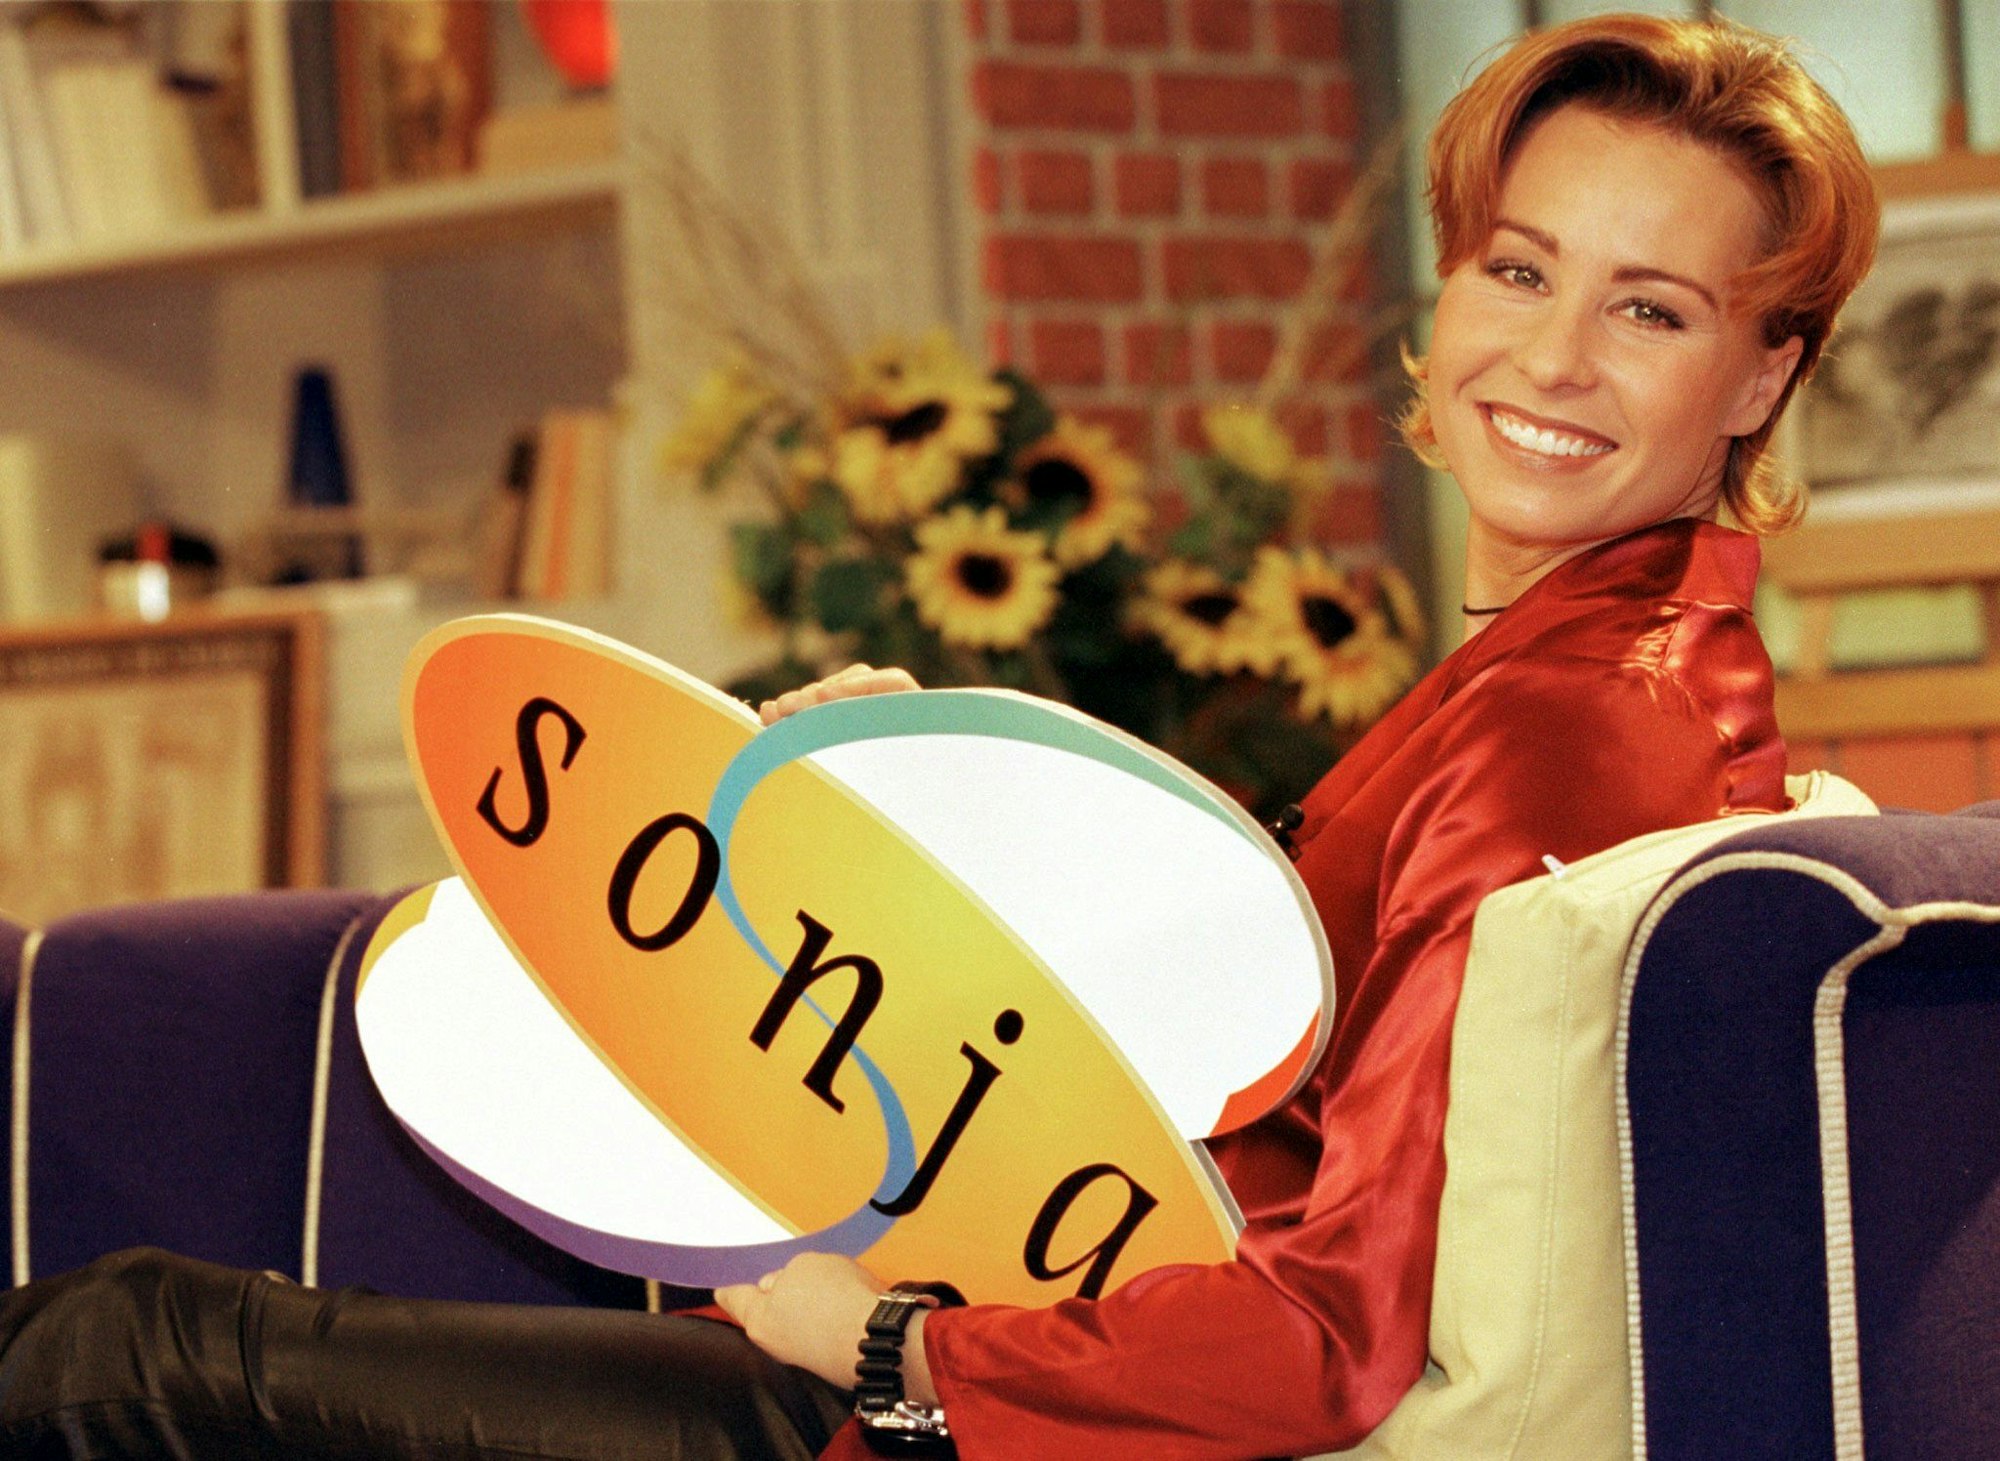 Sonja Zietlow stellt am Dienstag (7.1.) in Hamburg ihre neue Talkshow "Sonja" vor, die ab 13. Januar 97 montags bis freitags um 13 Uhr bei SAT.1 ausgestrahlt wird.